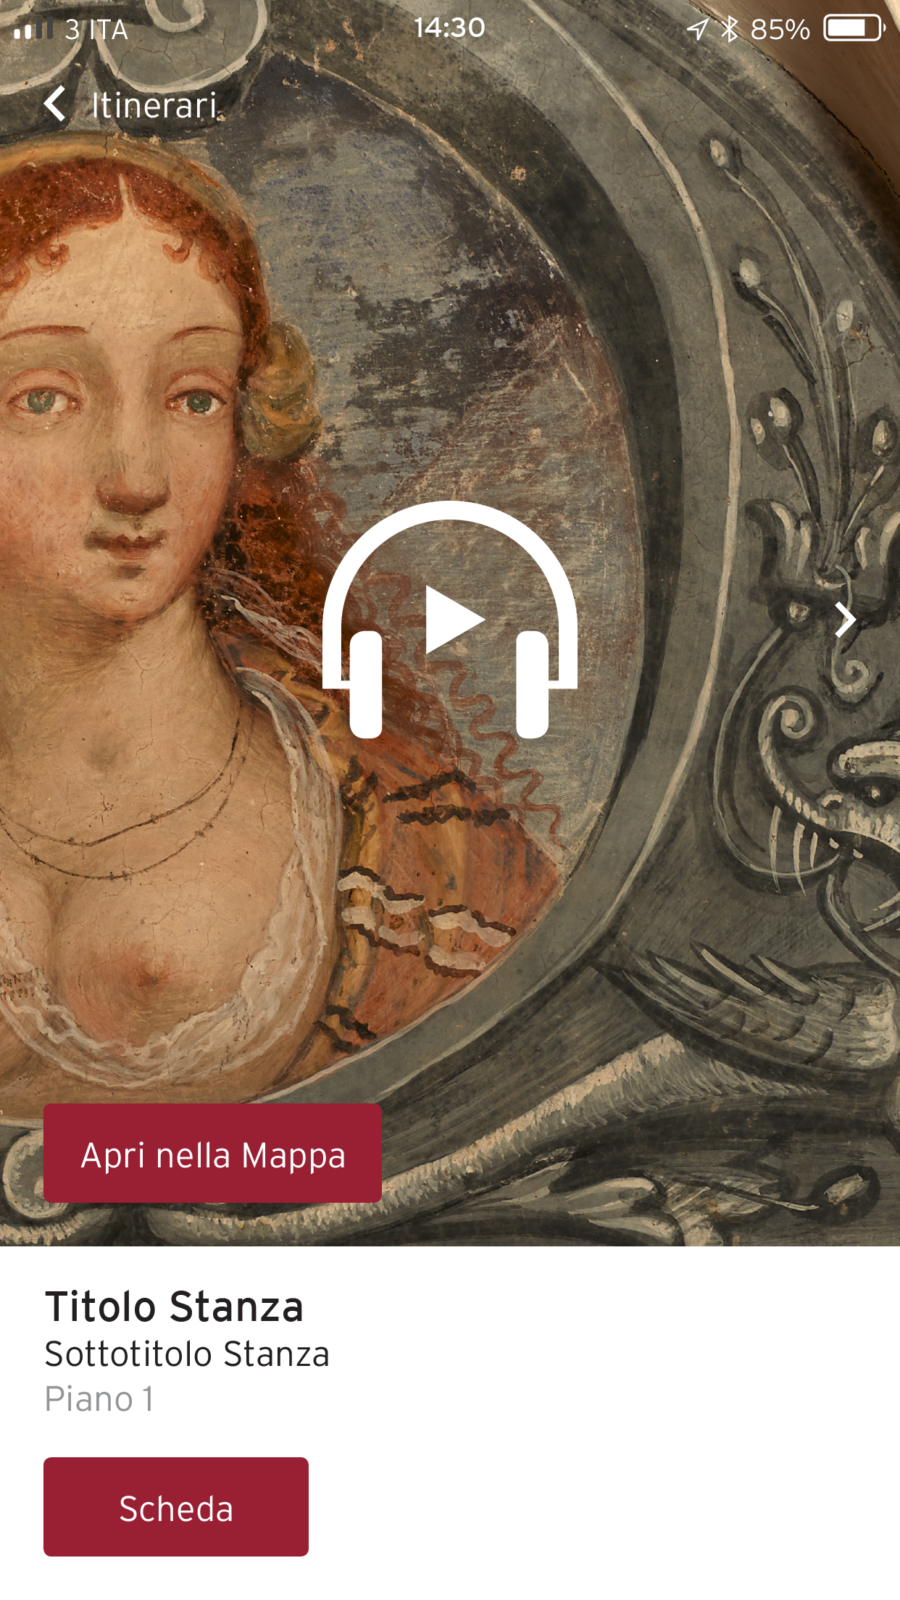 Screen dell'app mobile di Palazzo Besta, realizzata da ett, al centro il pulsante play per ascoltare l'audioguida e sullo sfondo una delle illustrazioni dipinte nelle stanze del palazzo di una donna dai capelli rossi